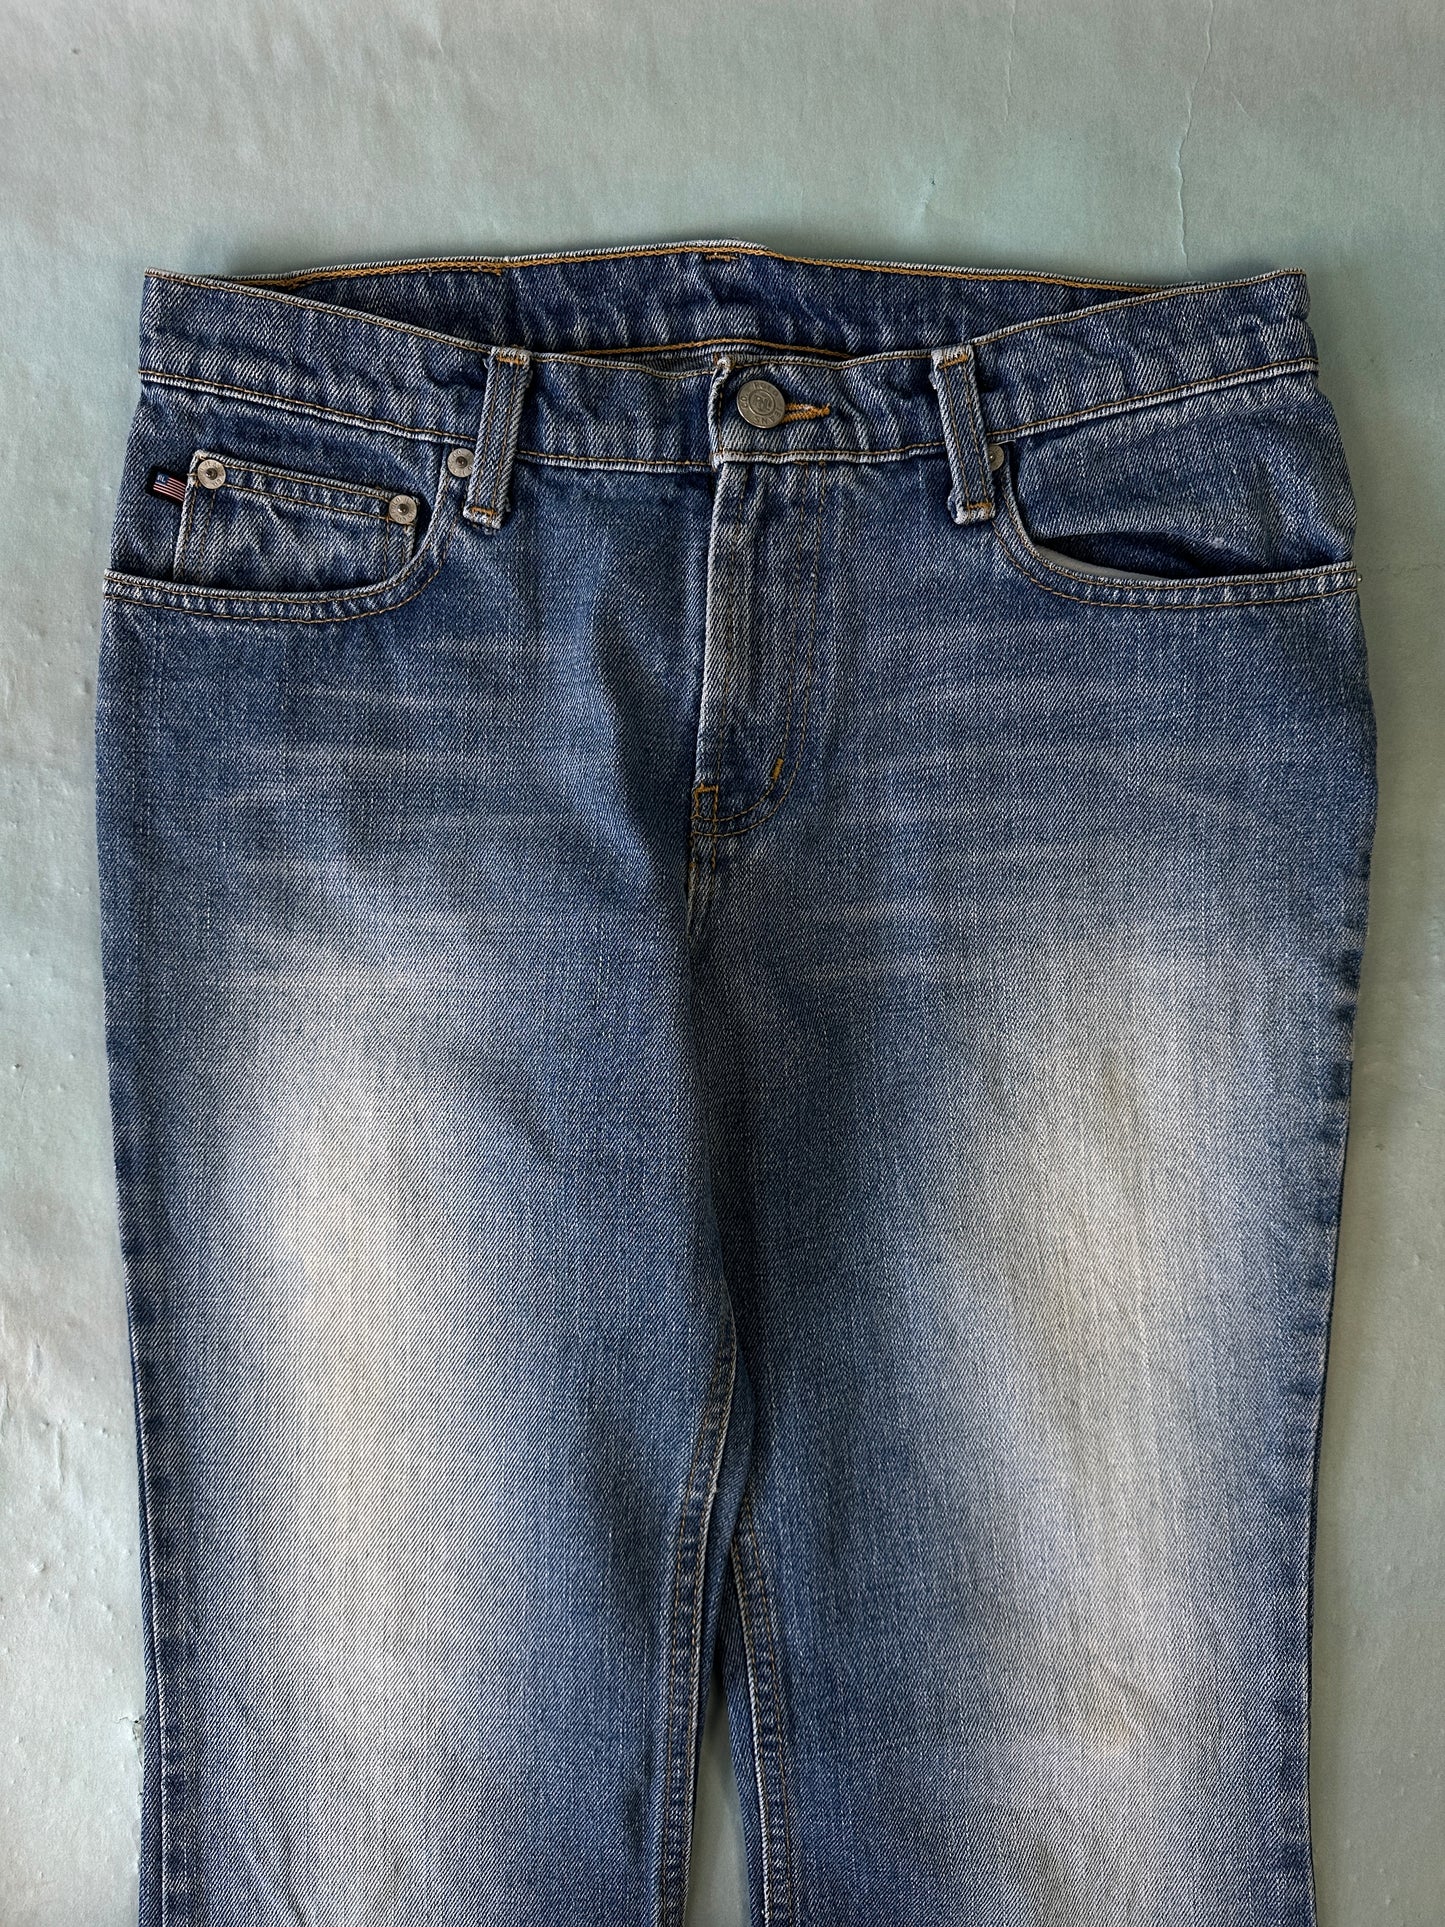 Ralph Lauren Polo Jeans Vintage Denim - 30